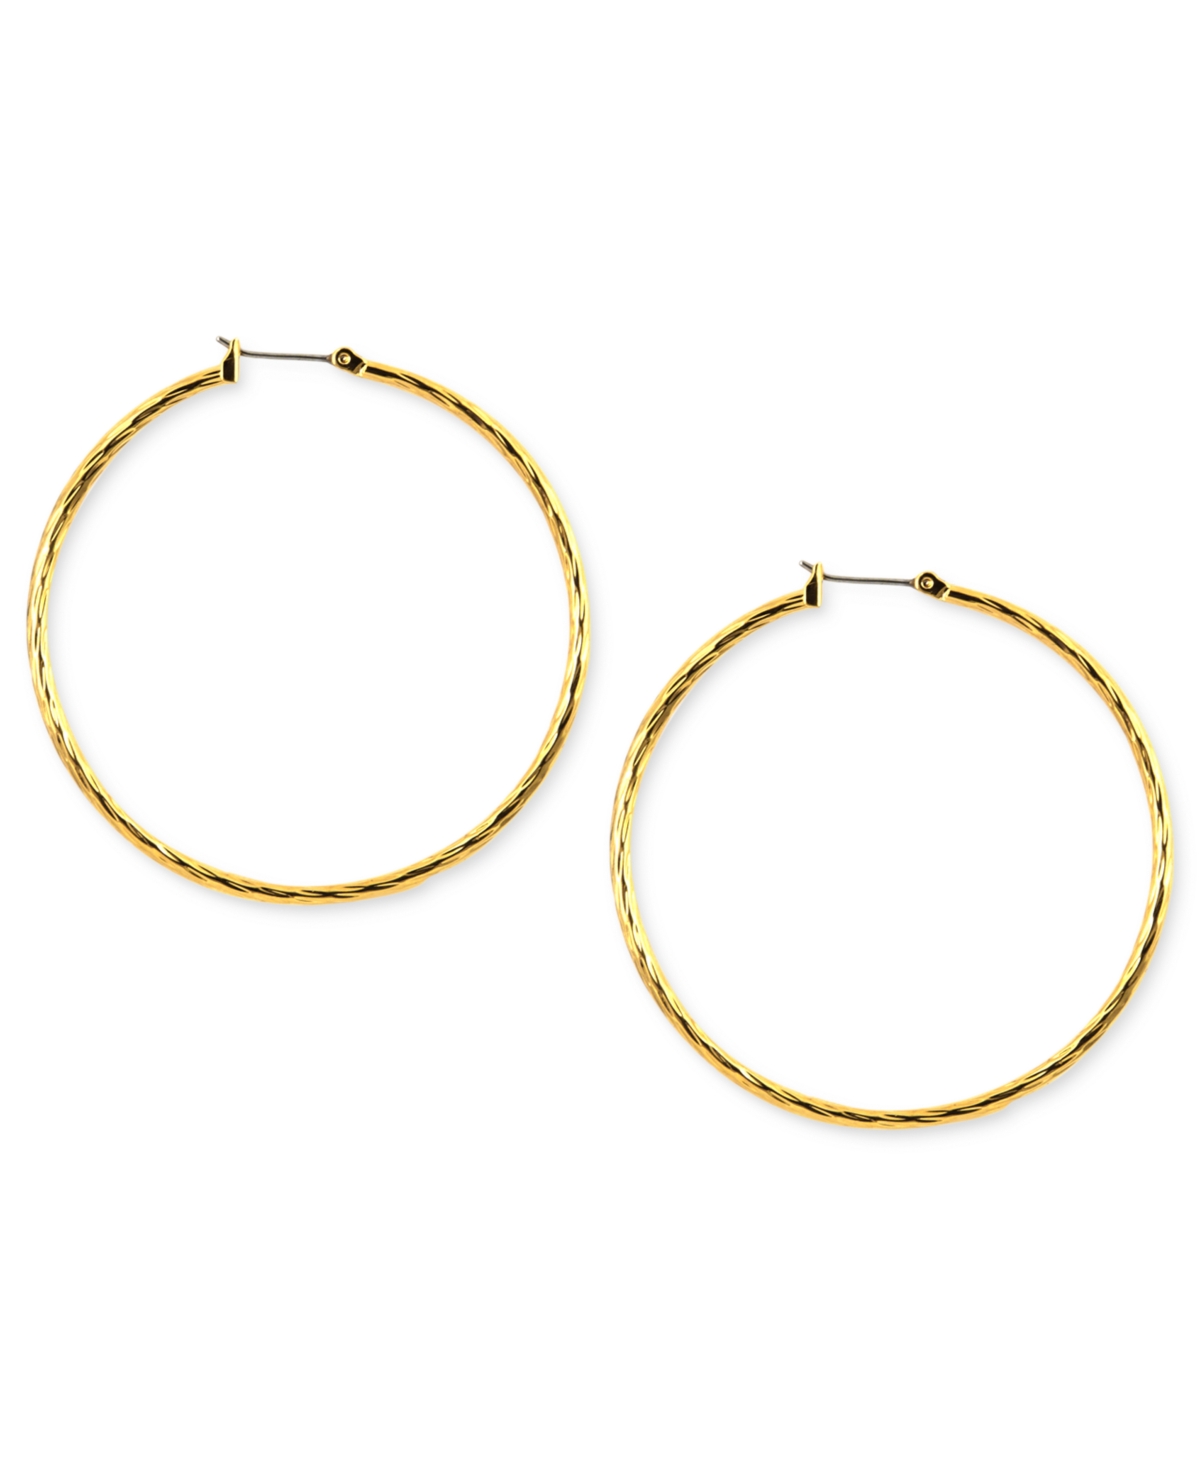 Gold-tone Textured Hoop Earrings, 2"